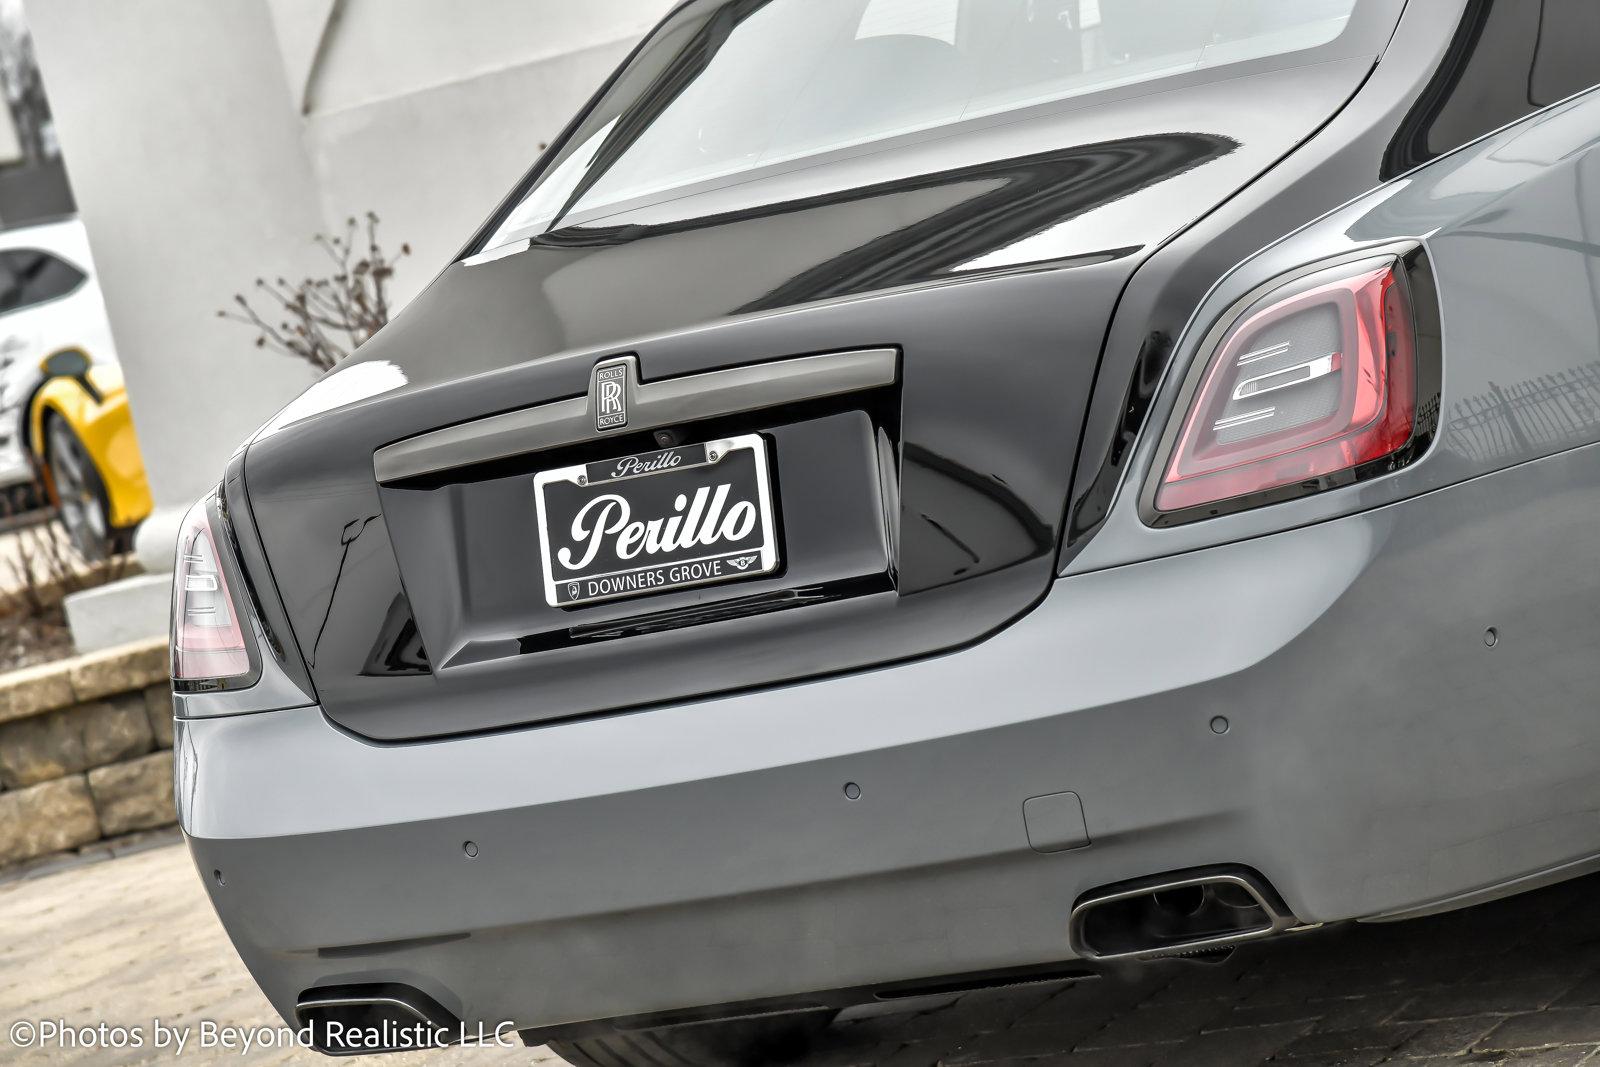 Certified Pre-Owned 2023 Rolls-Royce Ghost Silver Badge Sedan in